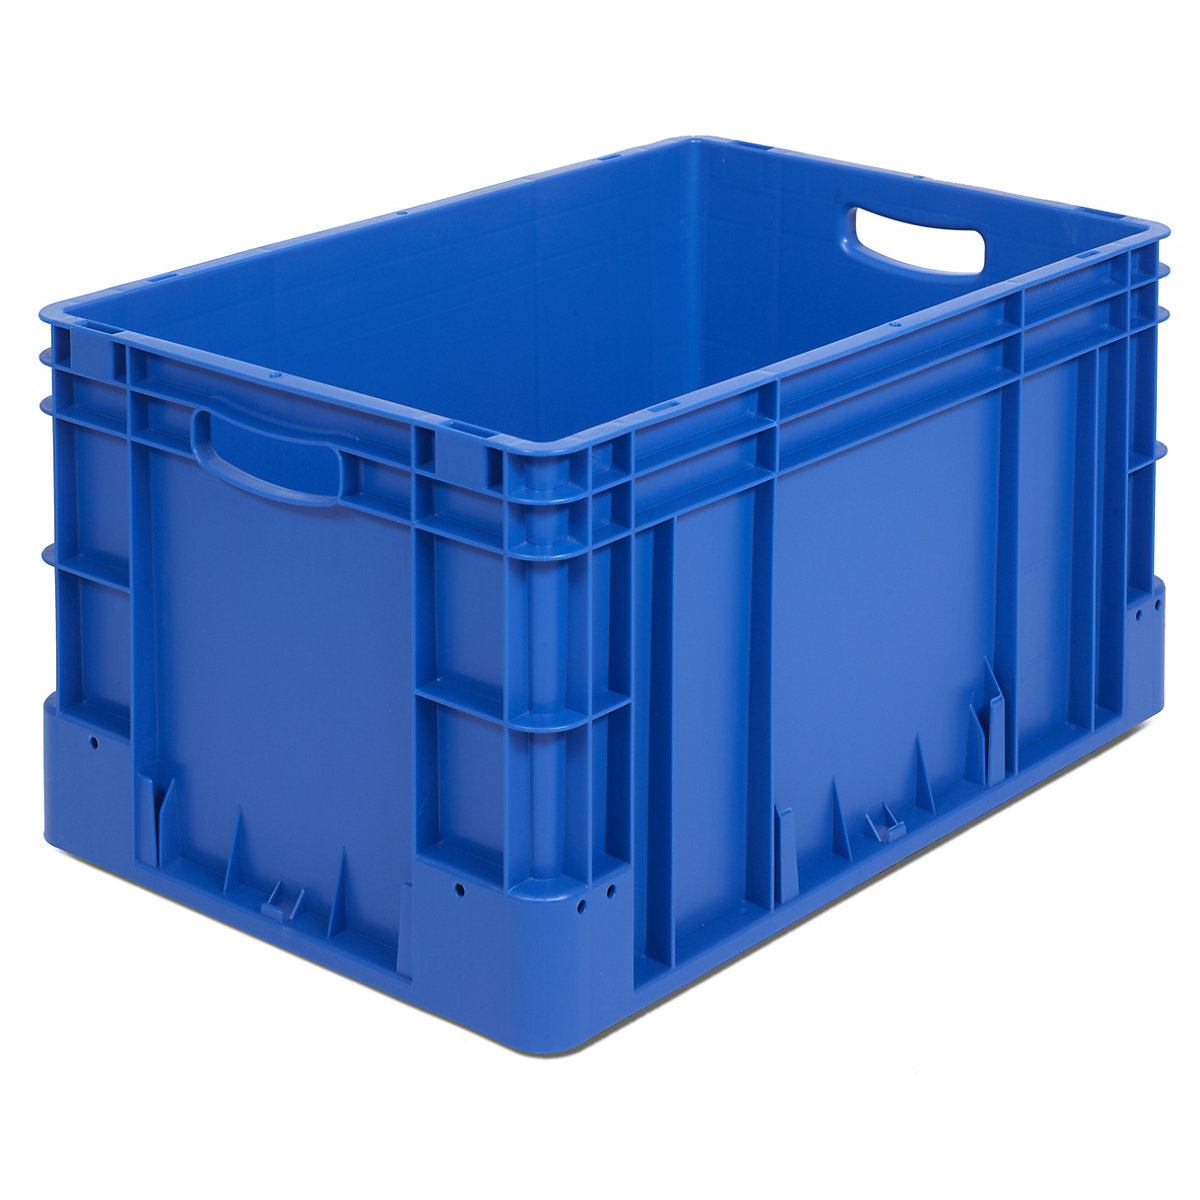 Industrijski spremnik, volumen 60 l, DxŠxV 600 x 400 x 320 mm, pak. 3 kom., u plavoj boji